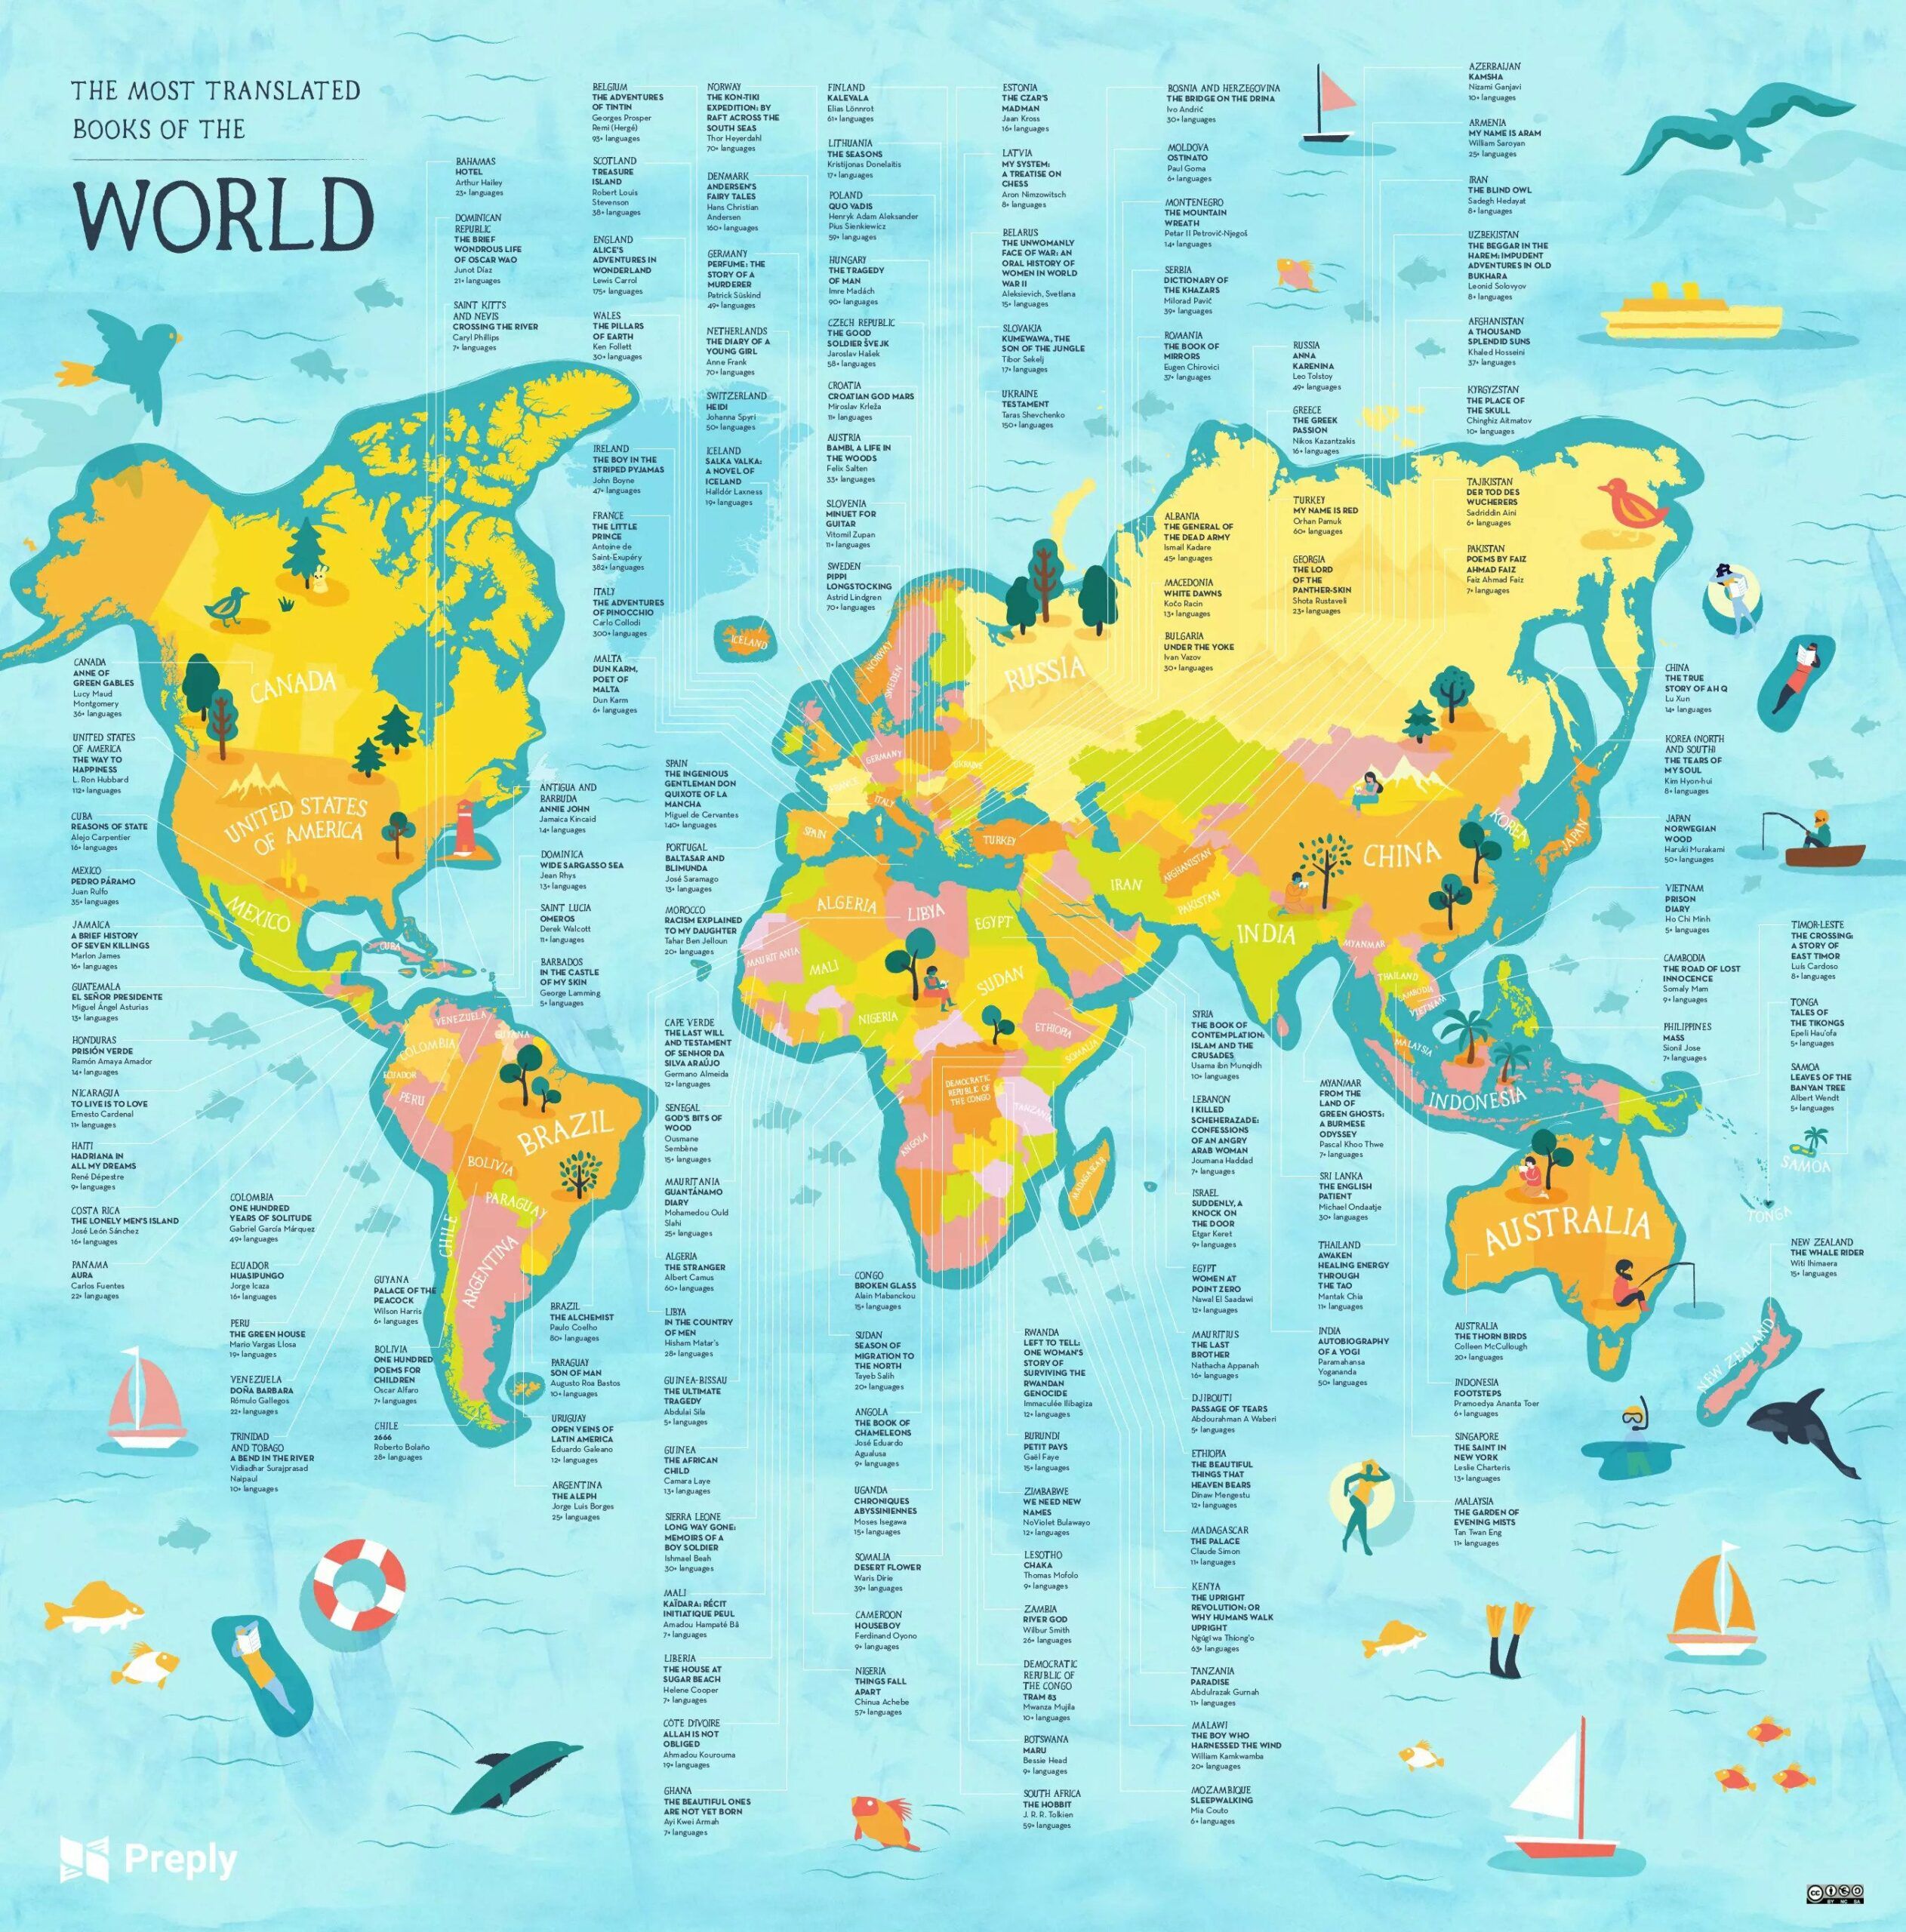 Mapa de los libros más traducidos del mundo